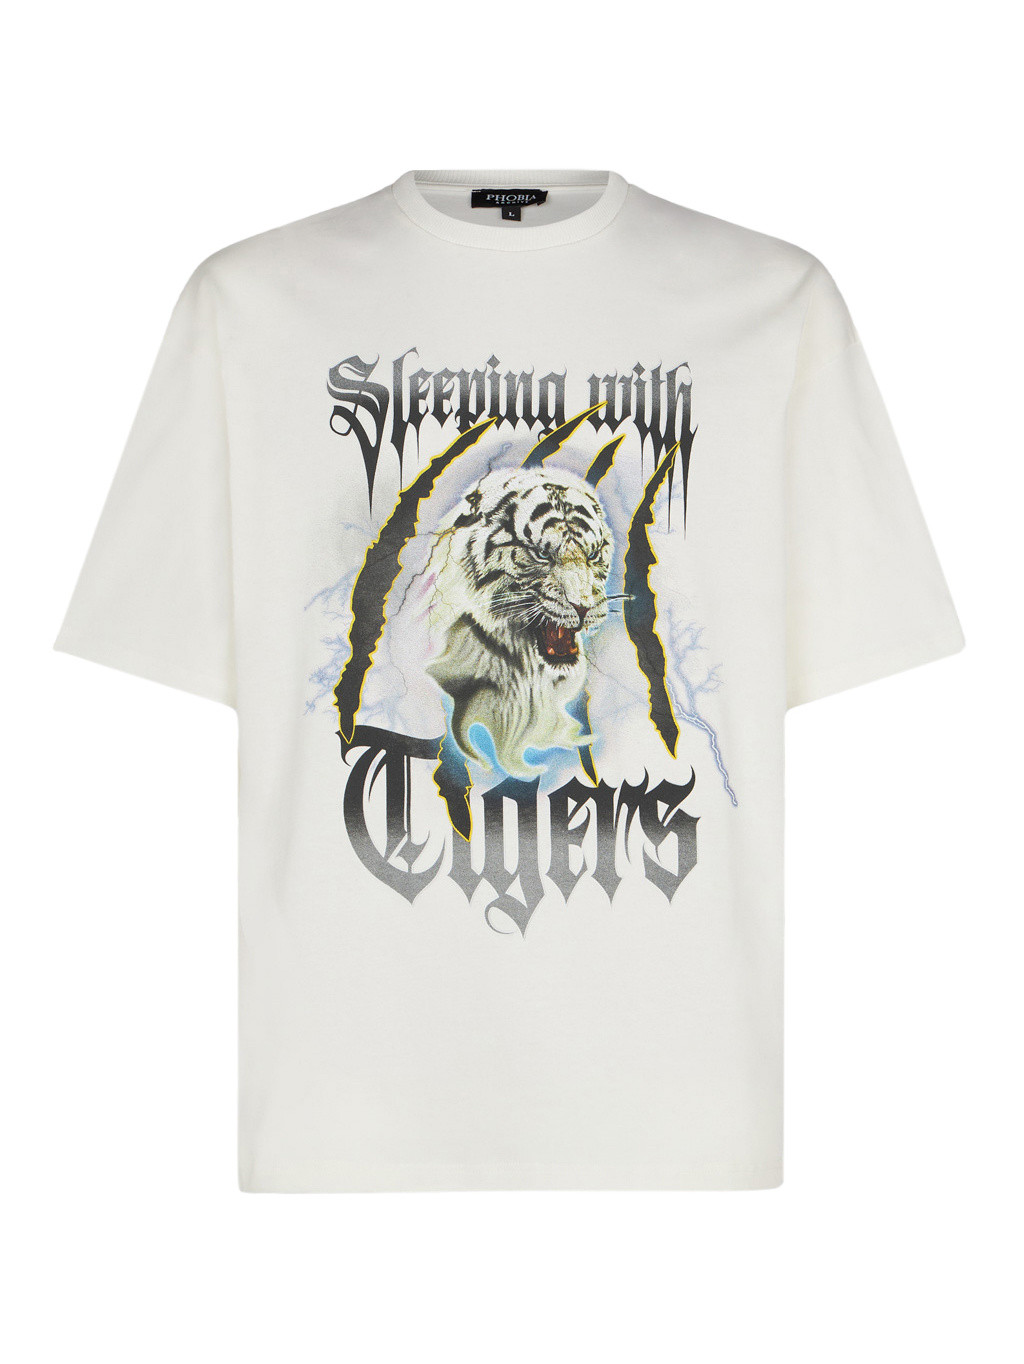 Phobia - Emis Killa T-shirt Sleeping with tigers, White, large image number 0